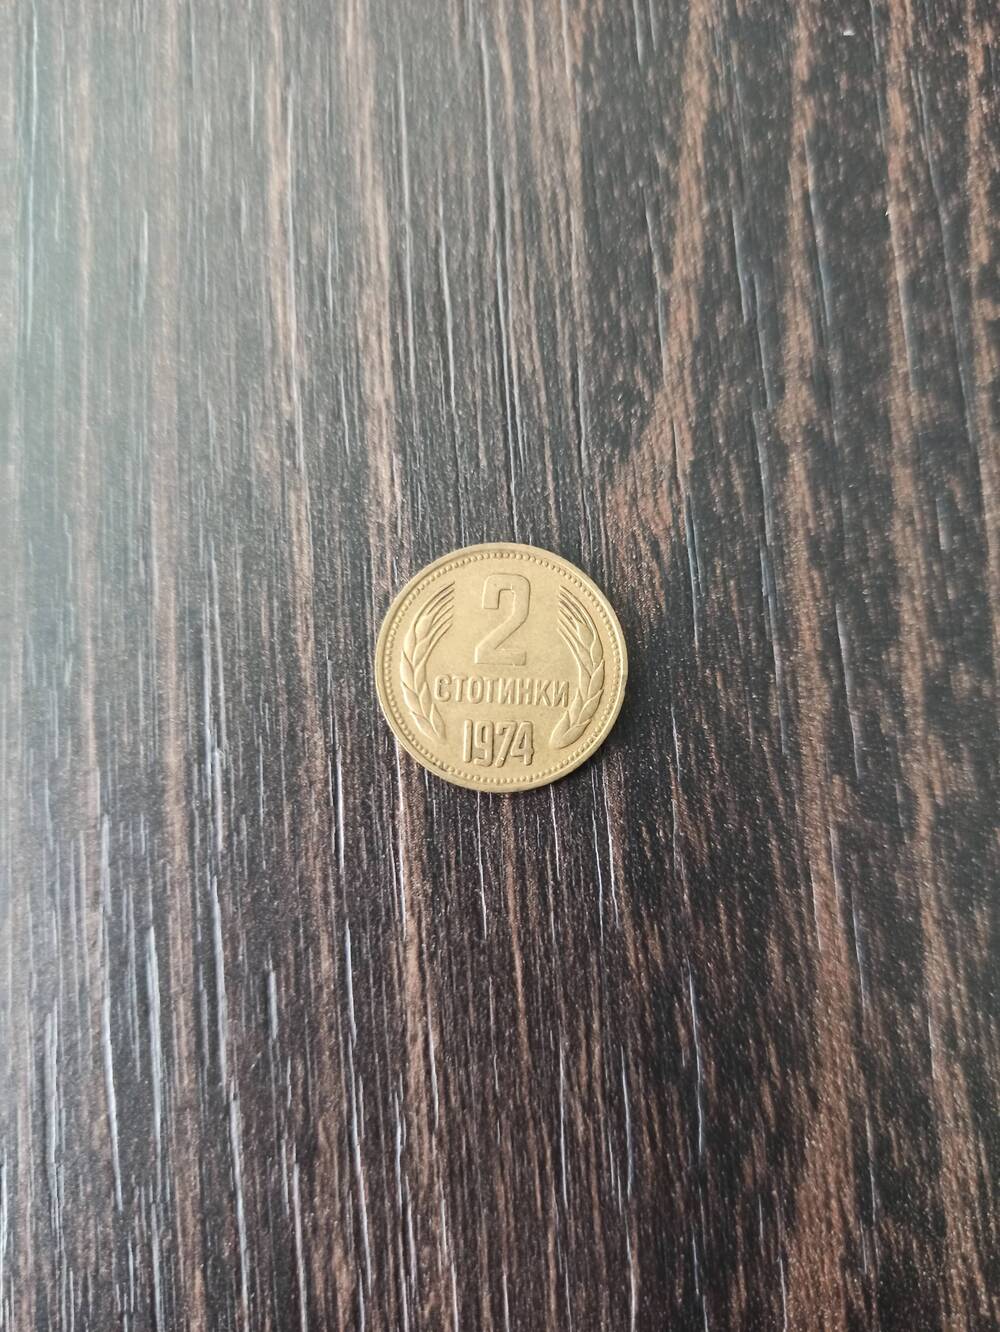 Нумизматика. Монета Болгарии достоинством 2 стотинки 1974 года. Лицевая сторона – в центре «2» Снизу 1974, по кругу – по одному колоску. Гербовая сторона – герб.